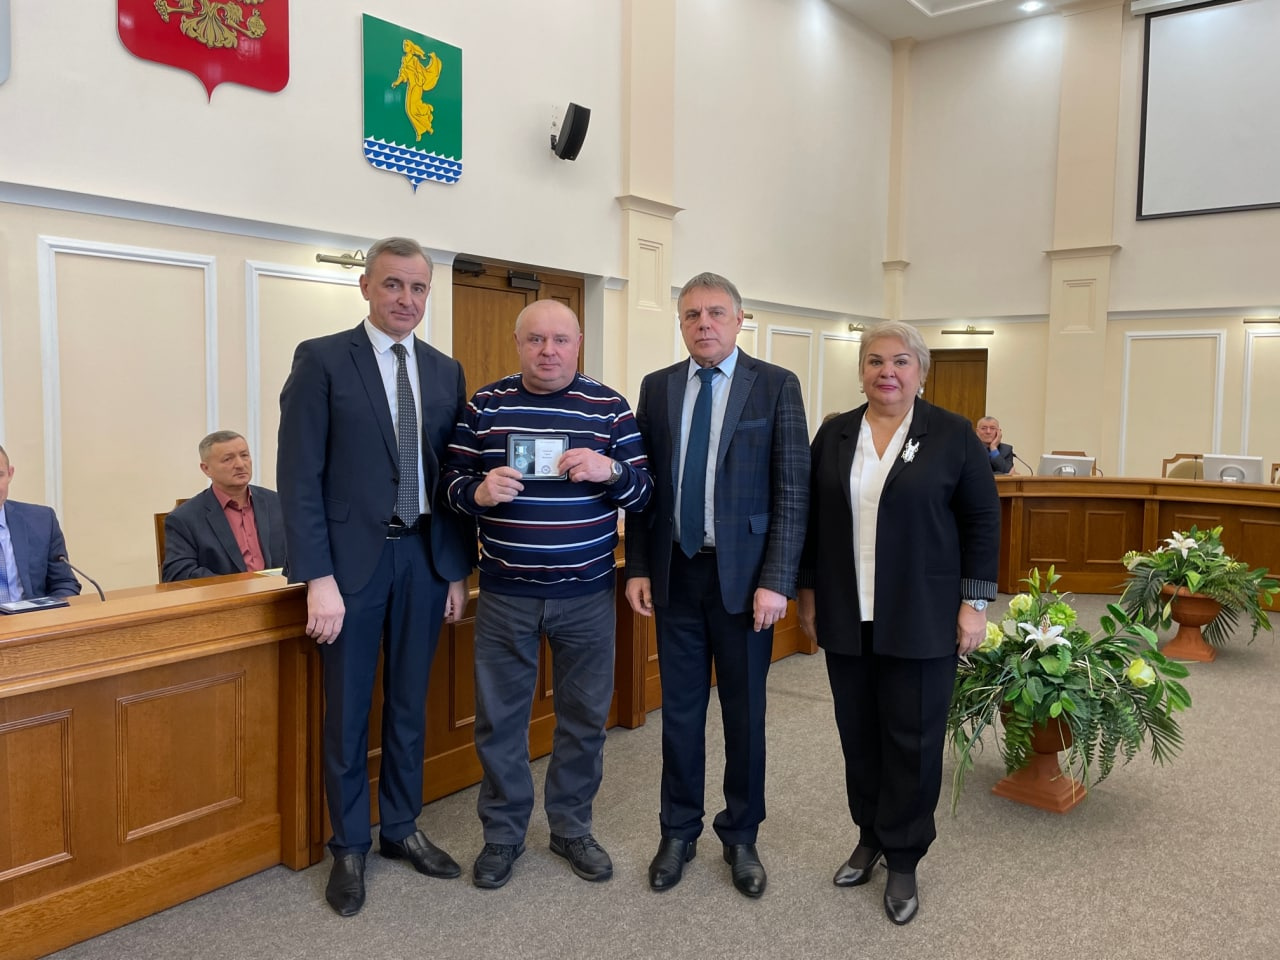 Награды вручили в честь 85-летия образования Иркутской области